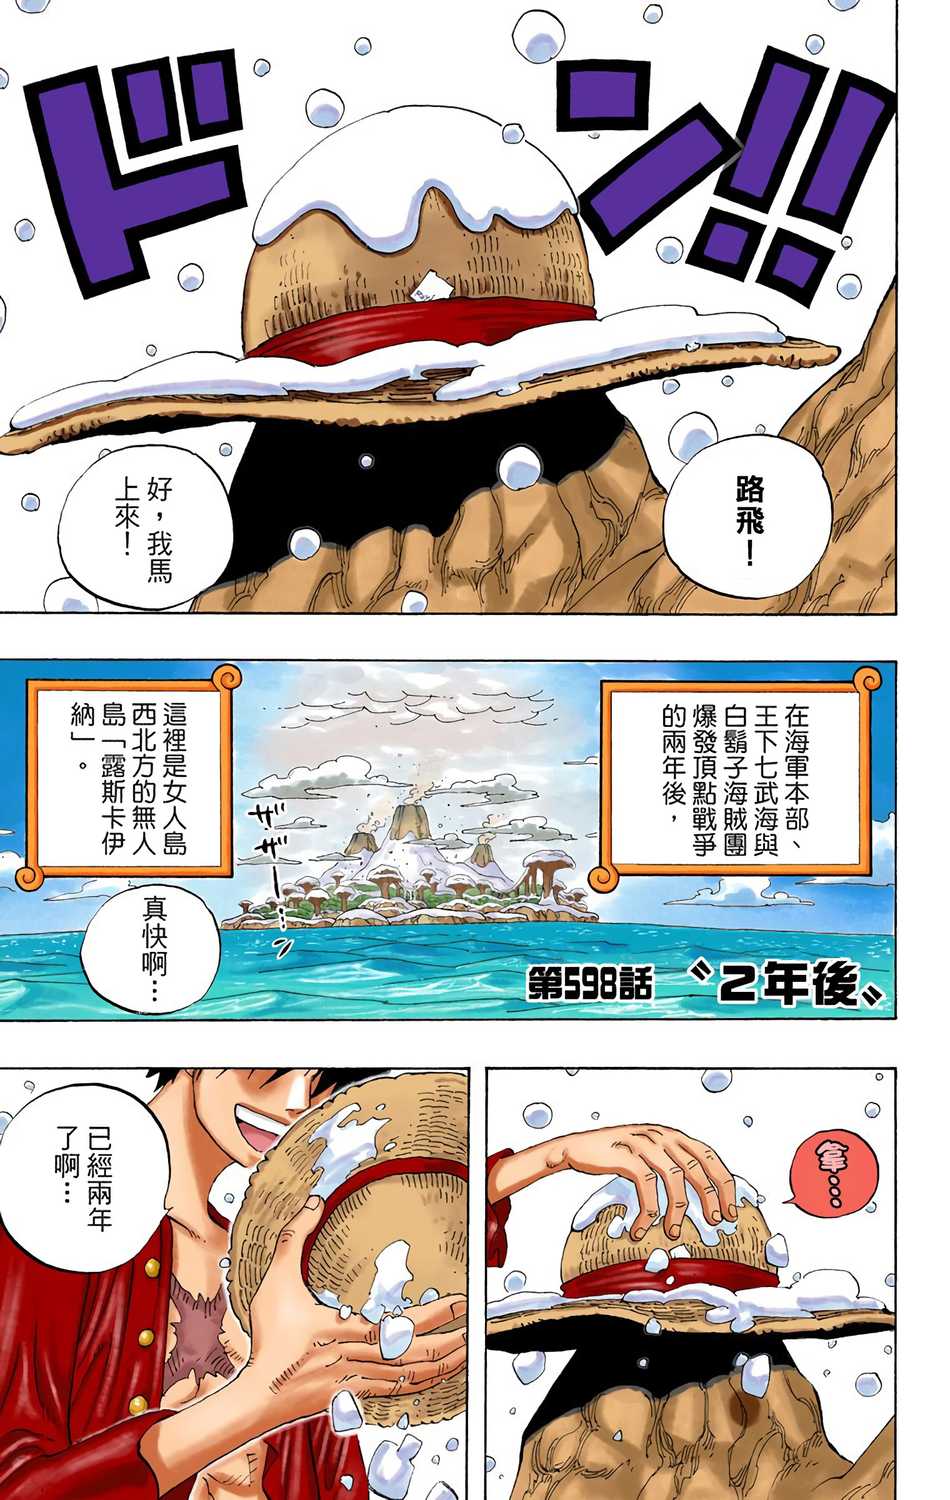 One Piece 海贼王 航海王 漫画全彩电子版汉化版1 62和73卷第61集 漫画db